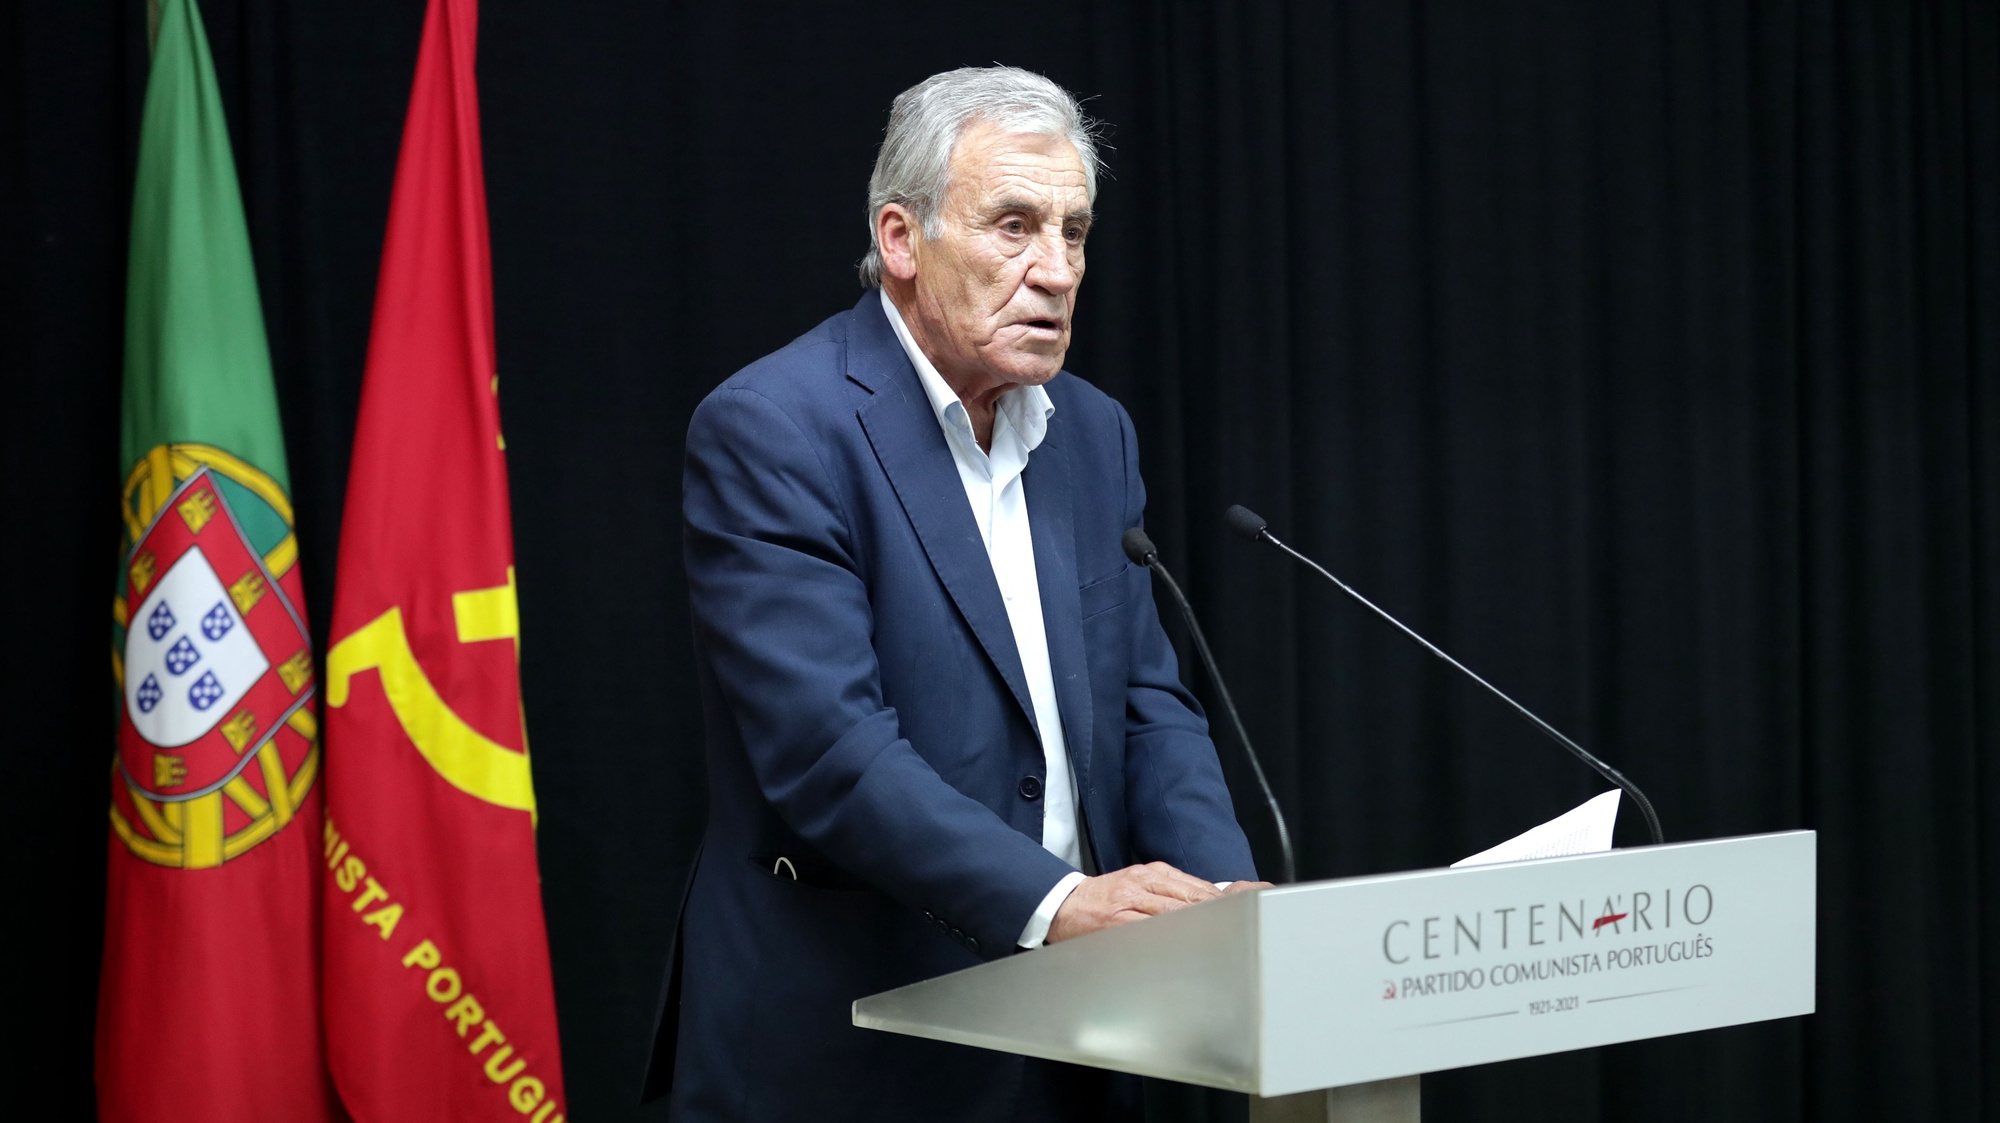 O secretário-geral do partido Comunista Português (PCP), Jerónimo de Sousa, discursa durante a sessão &quot;O PCP e o 25 de Abril&quot;, no Porto, 30 de março de 2021. ESTELA SILVA/LUSA